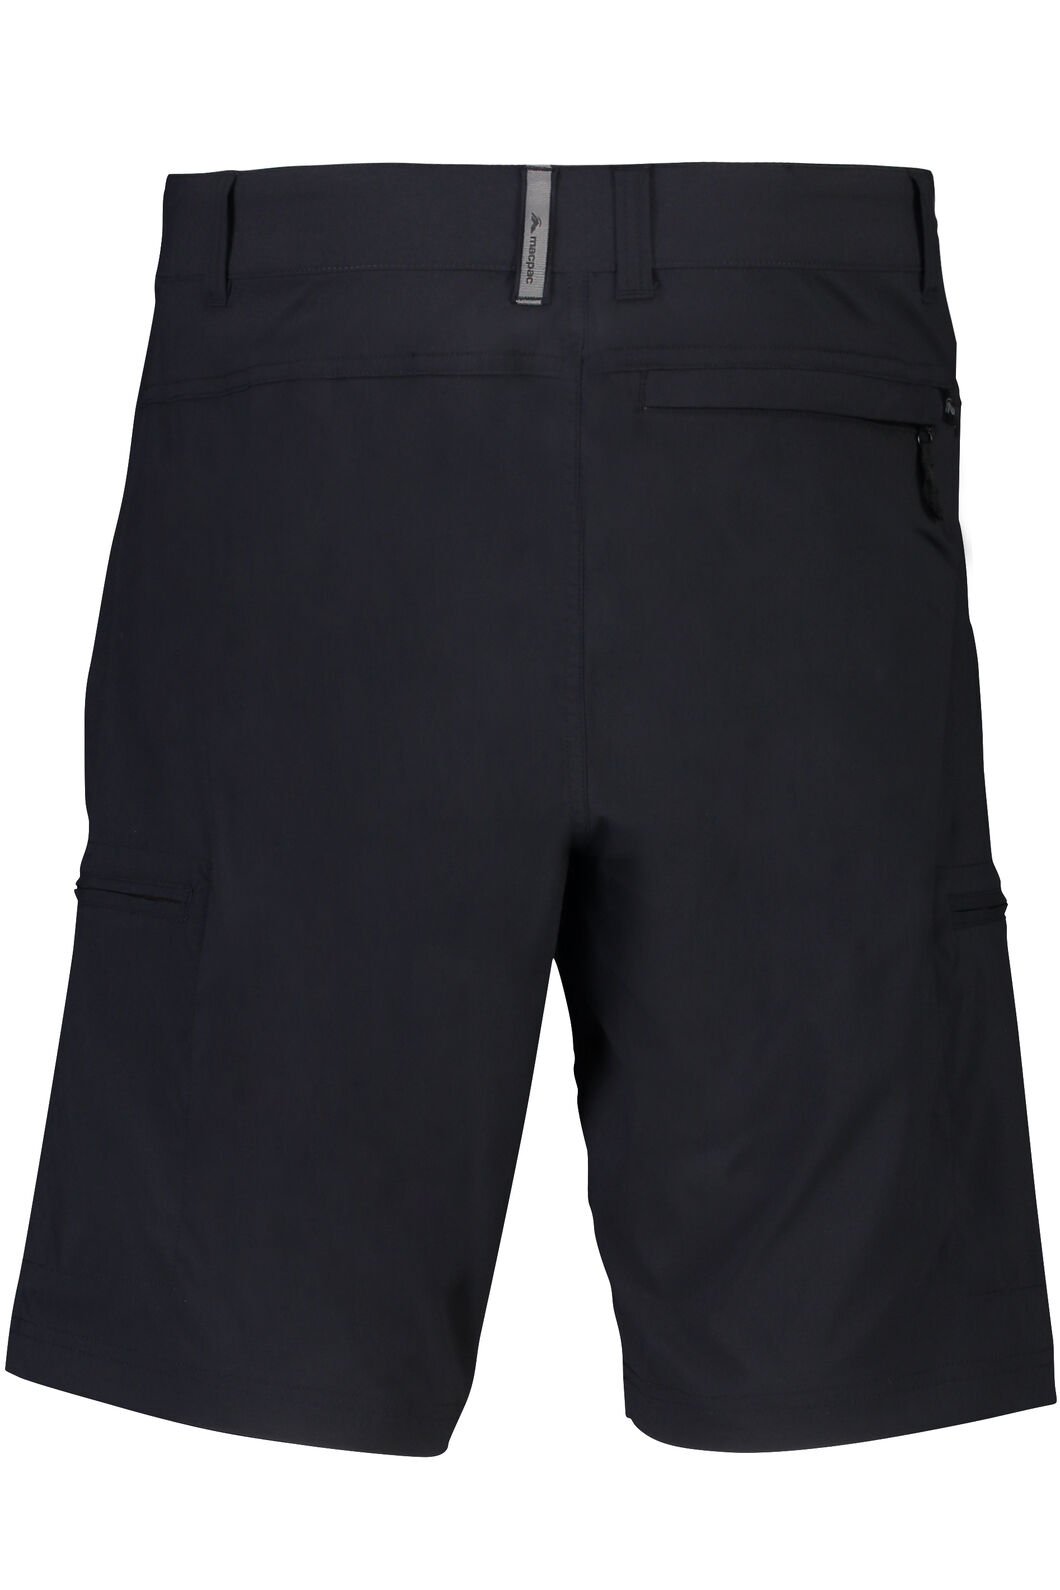 Macpac Drift Shorts - Men's | Macpac